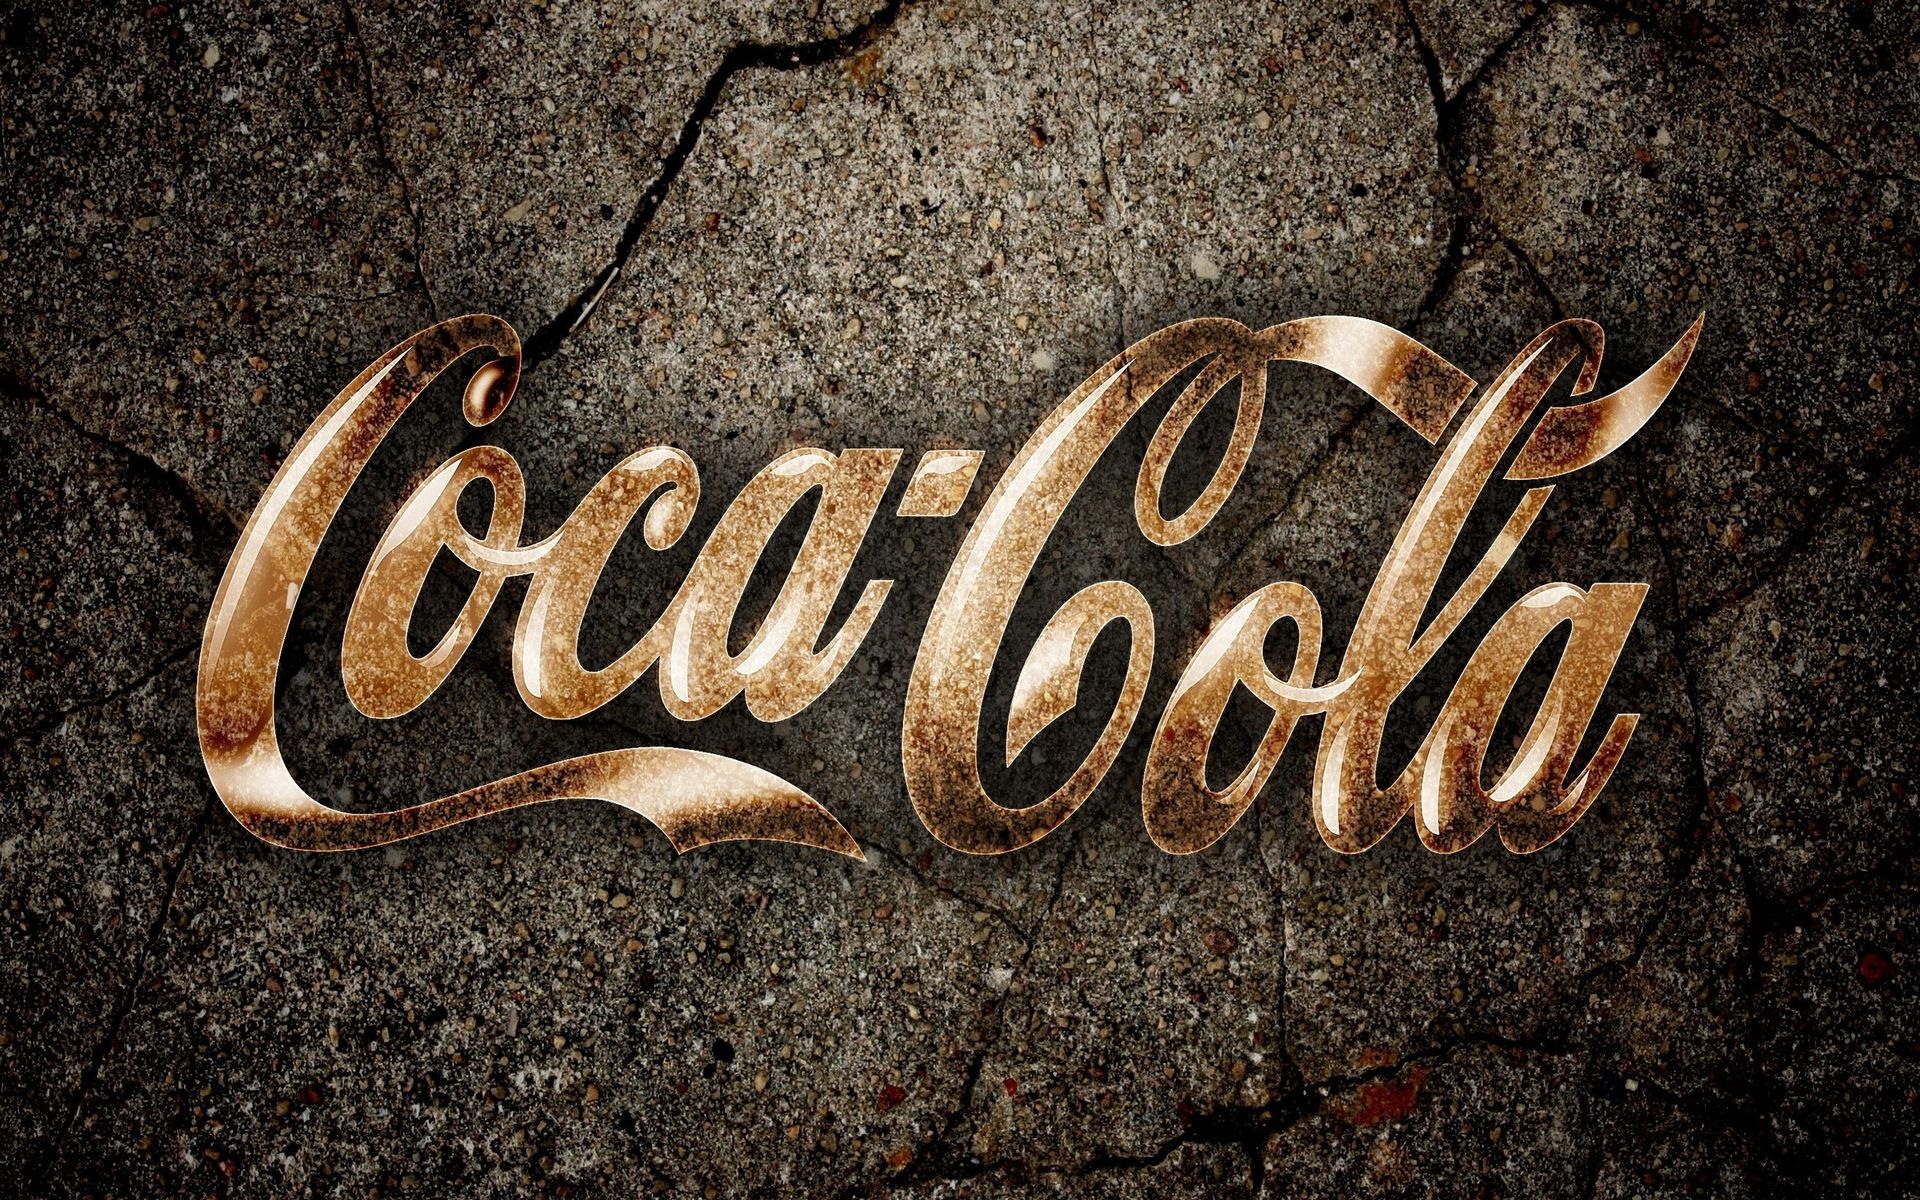 Coca-Cola beautiful ad wallpaper #14 - 1920x1200